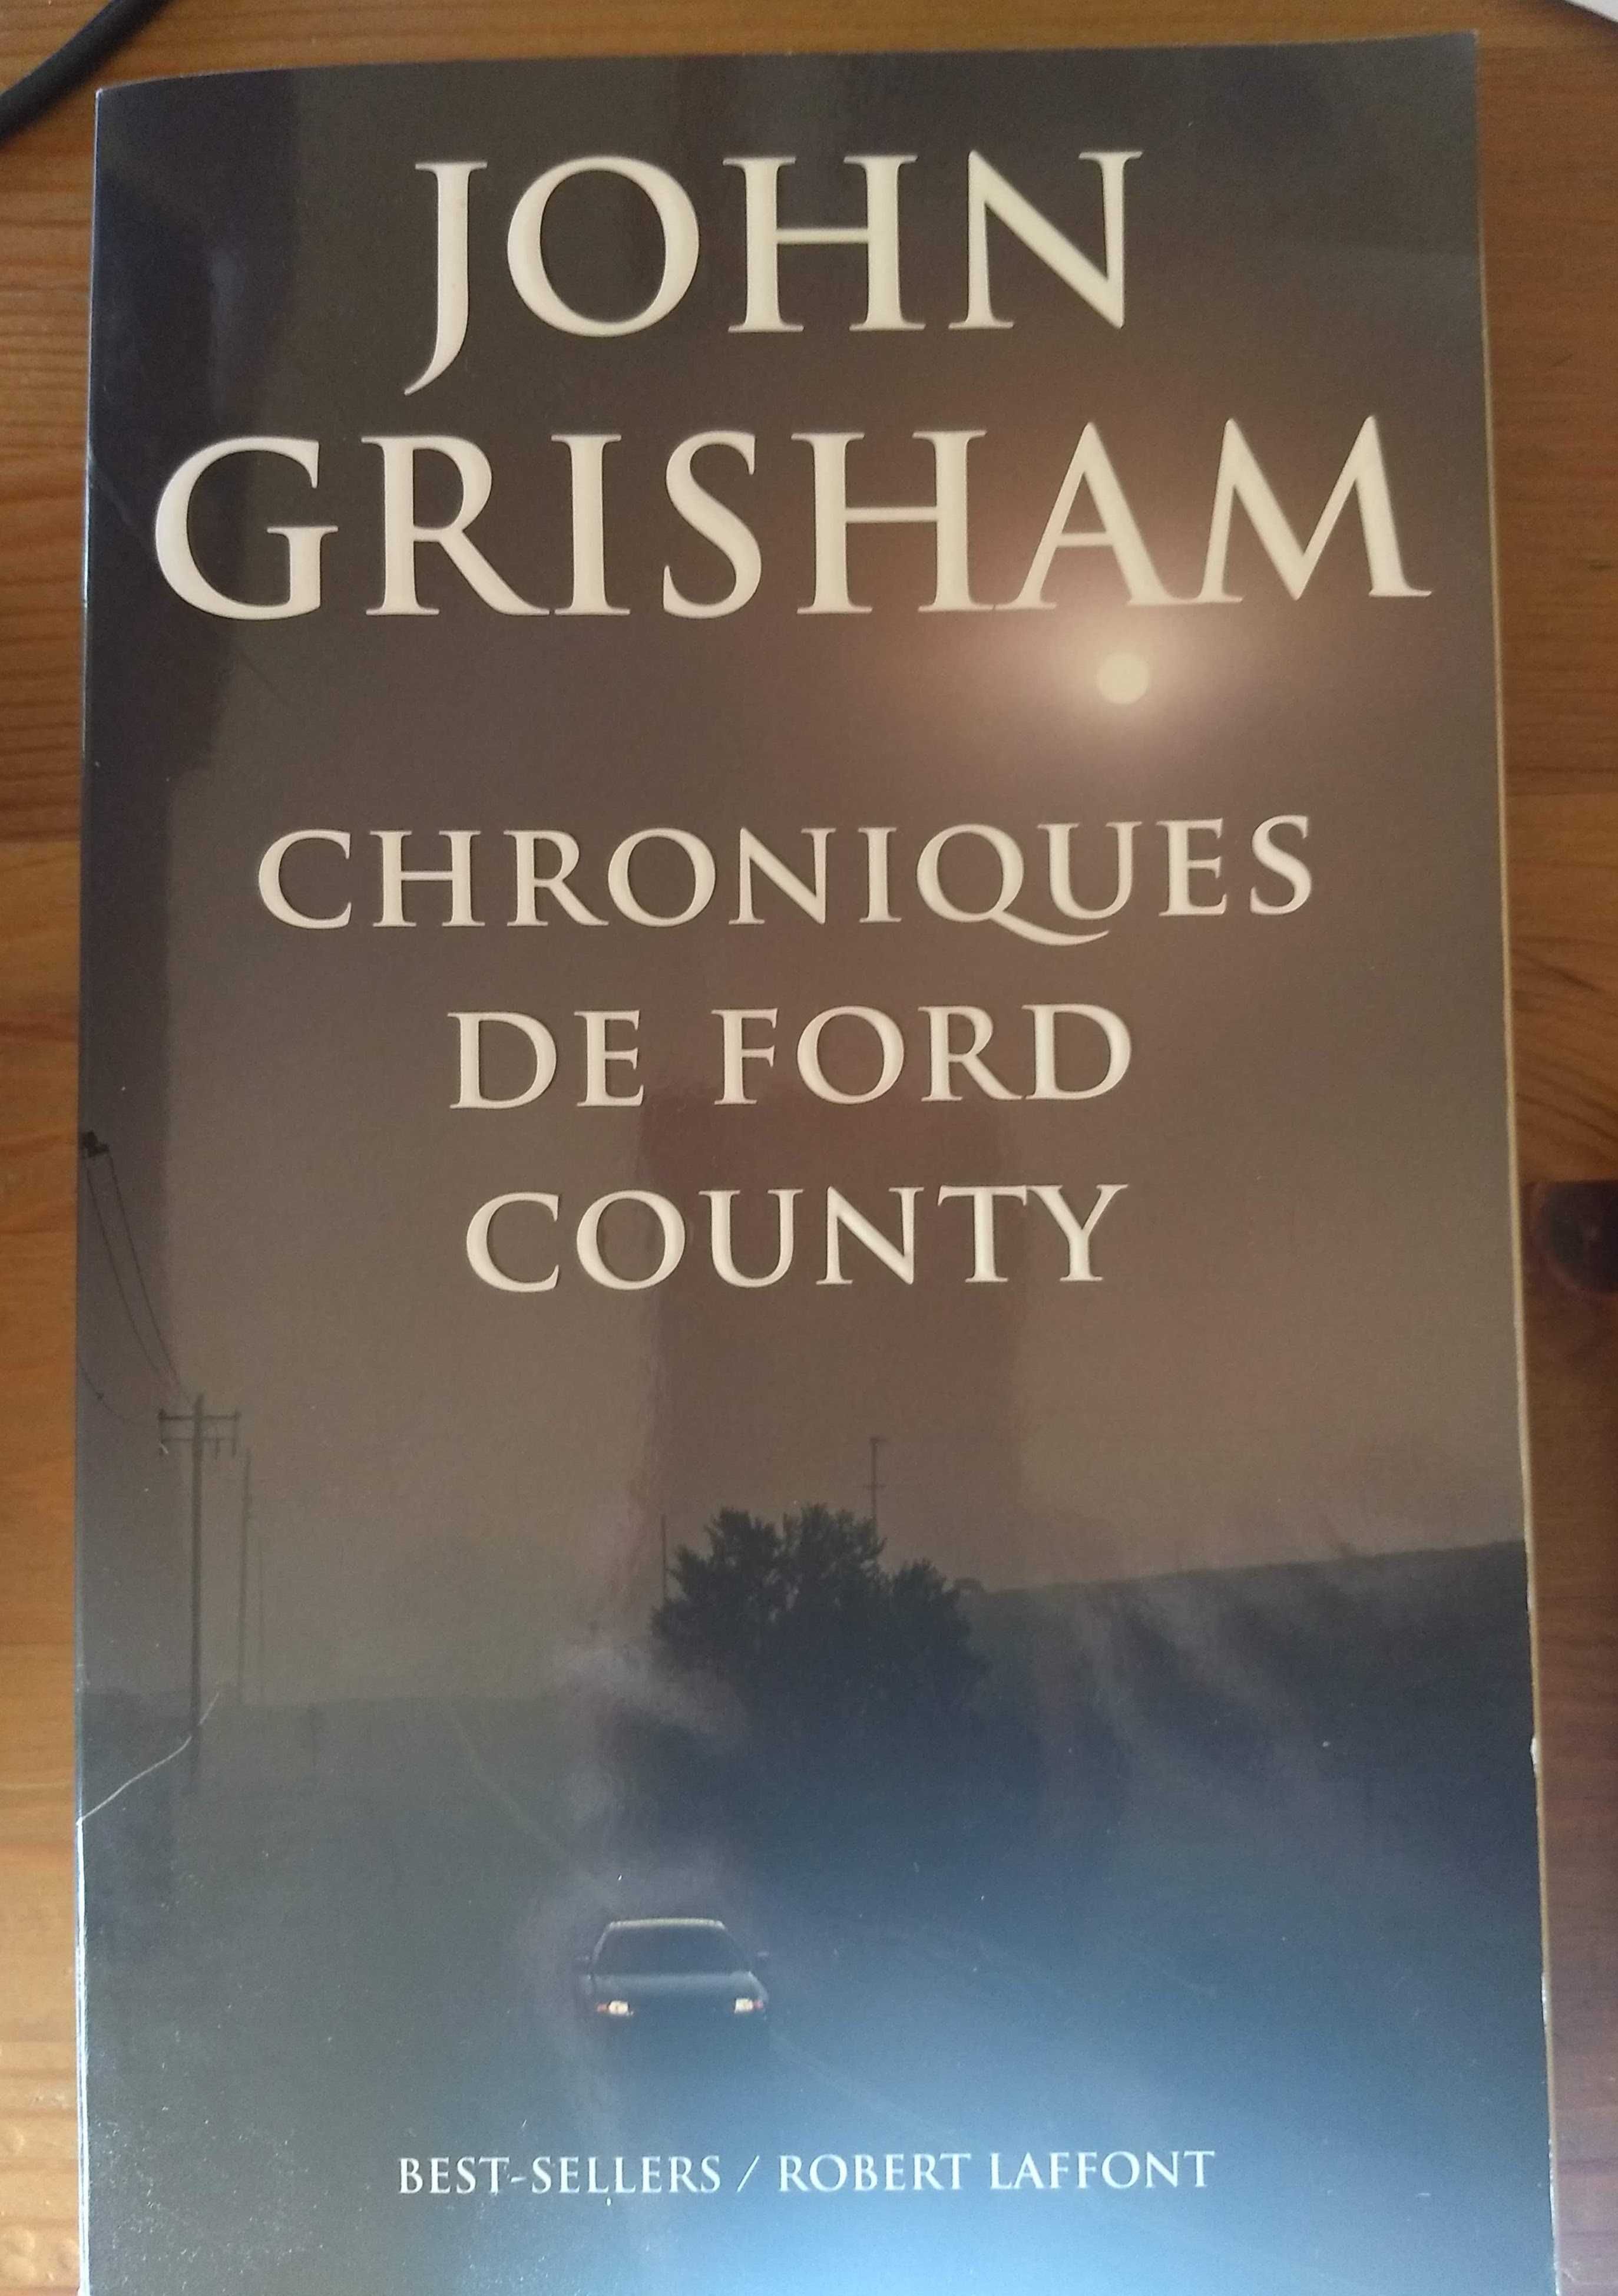 Chroniques de Ford County, de John Grisham (edição francesa)